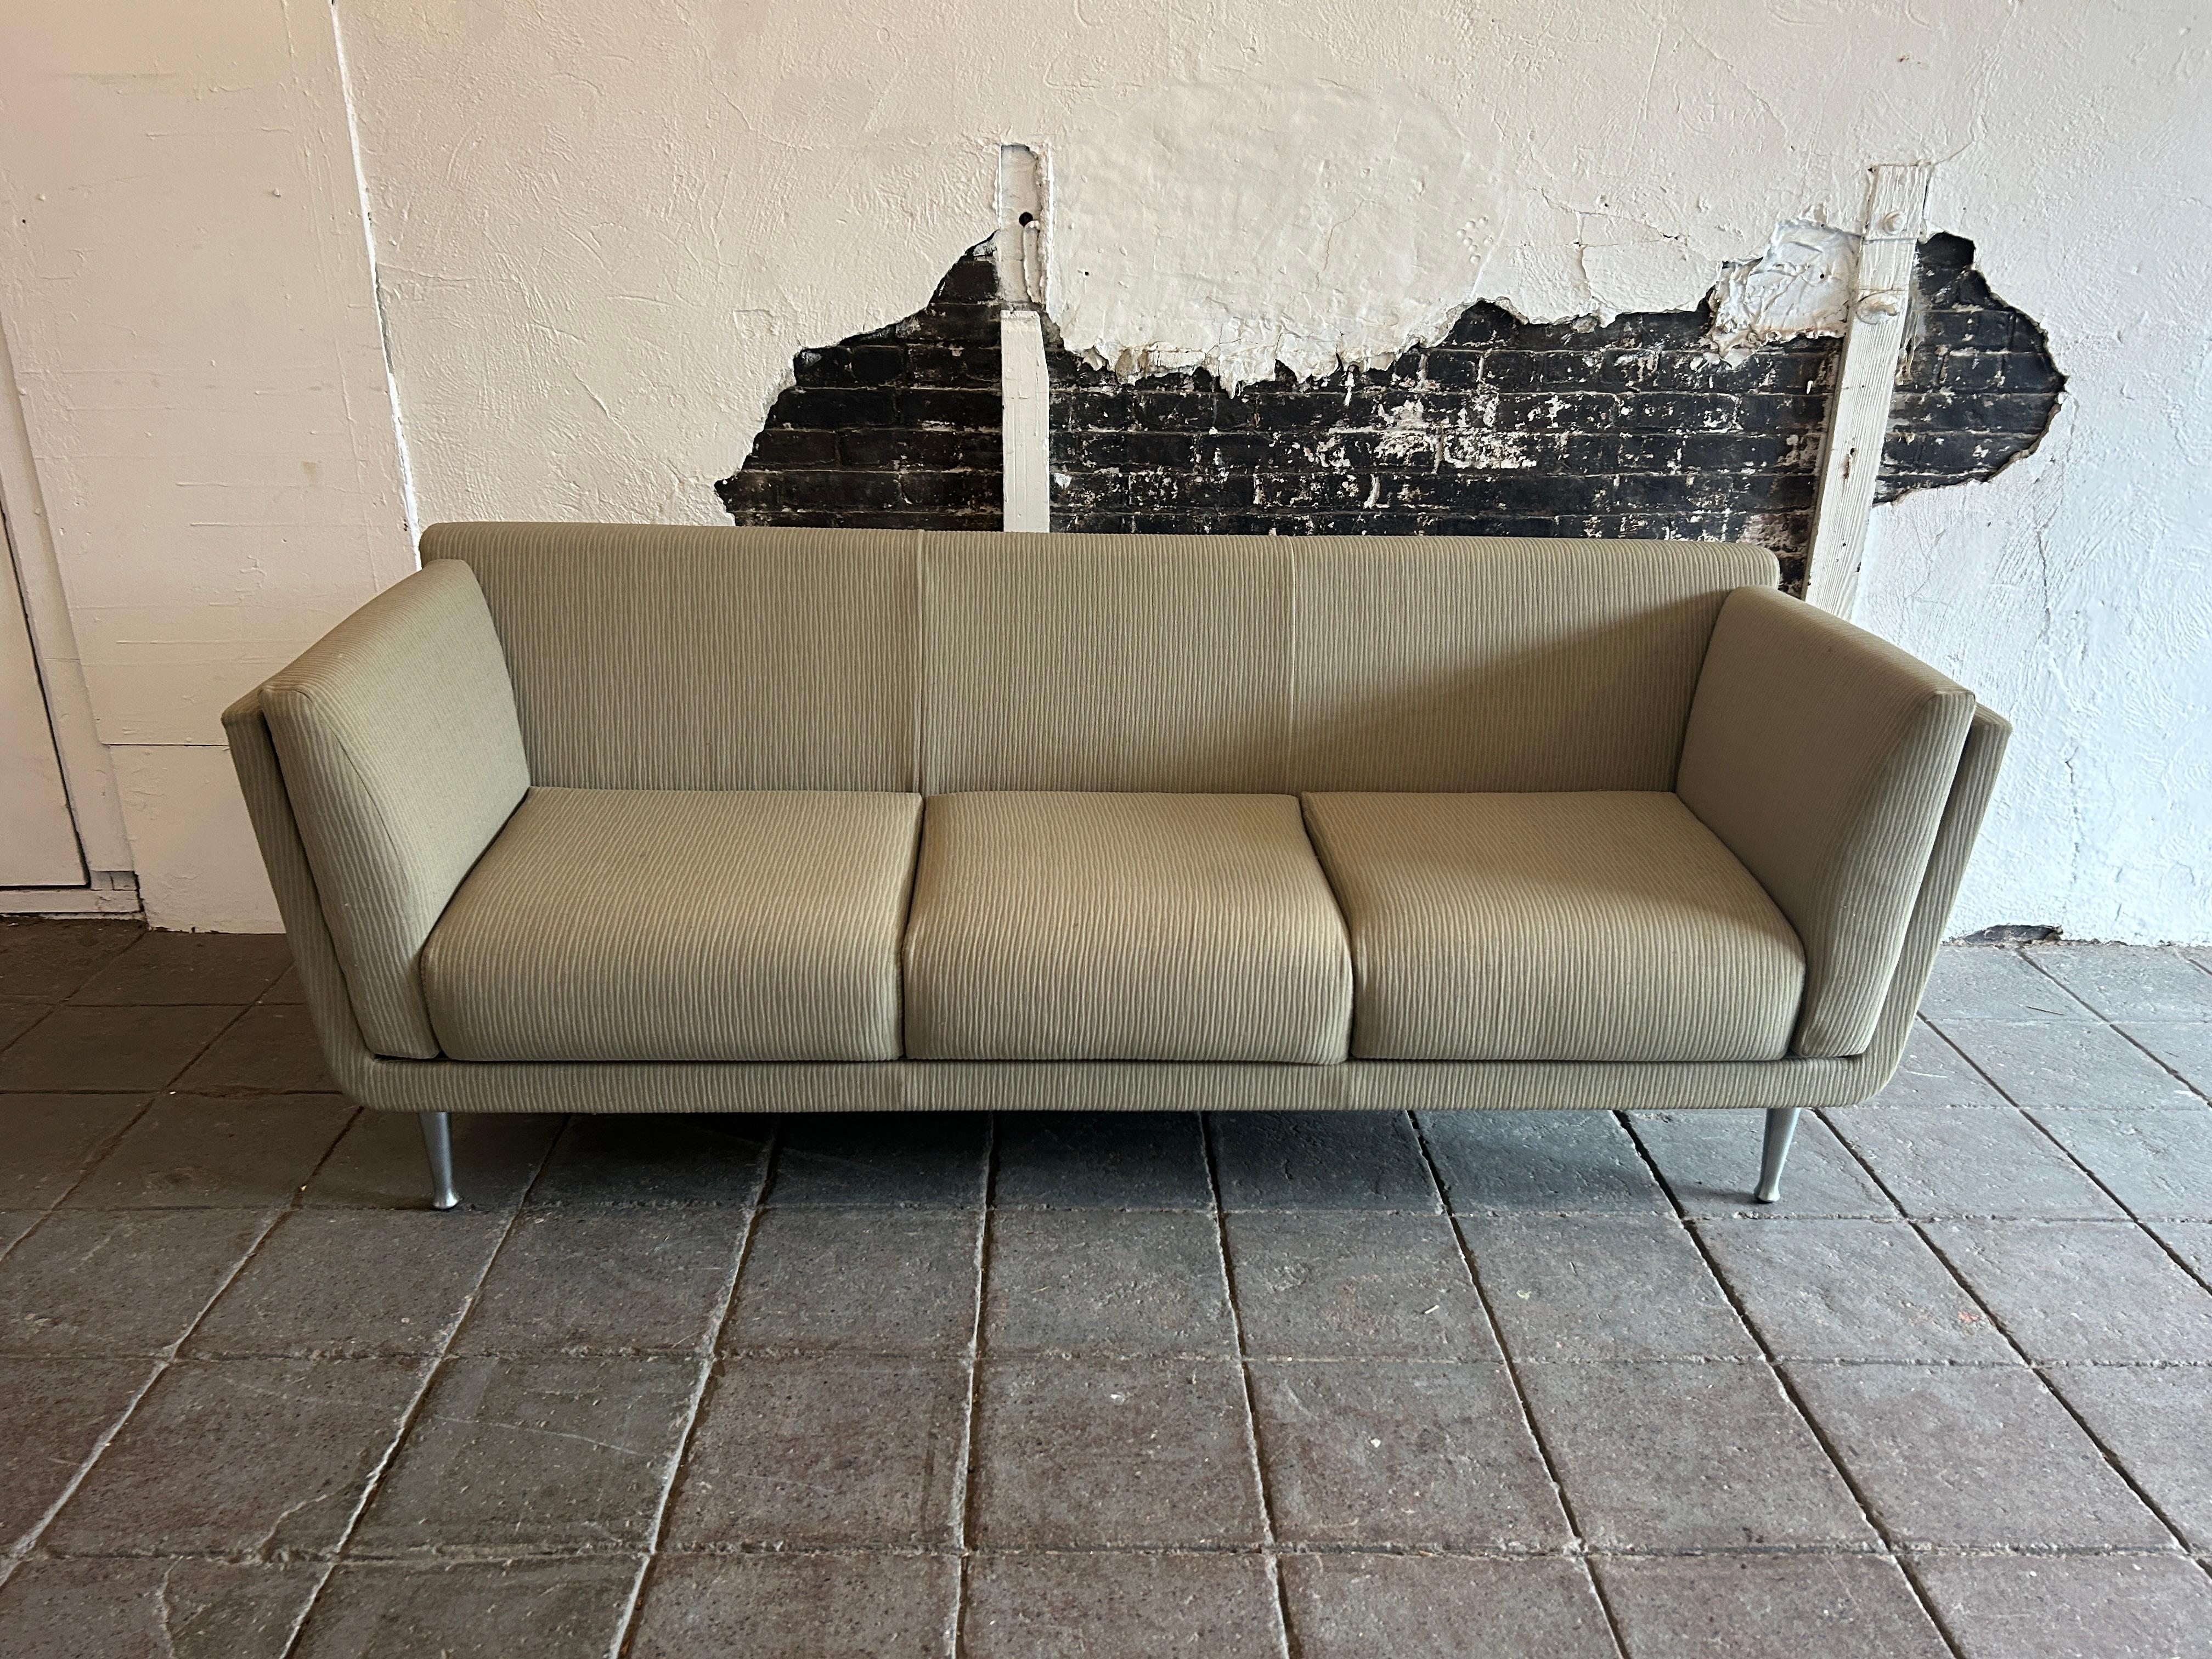 Ce canapé est recouvert d'un revêtement vert sauge/tan avec une texture verticale et une coque en bois plus clair qui repose sur 4 pieds en aluminium massif. Ce 